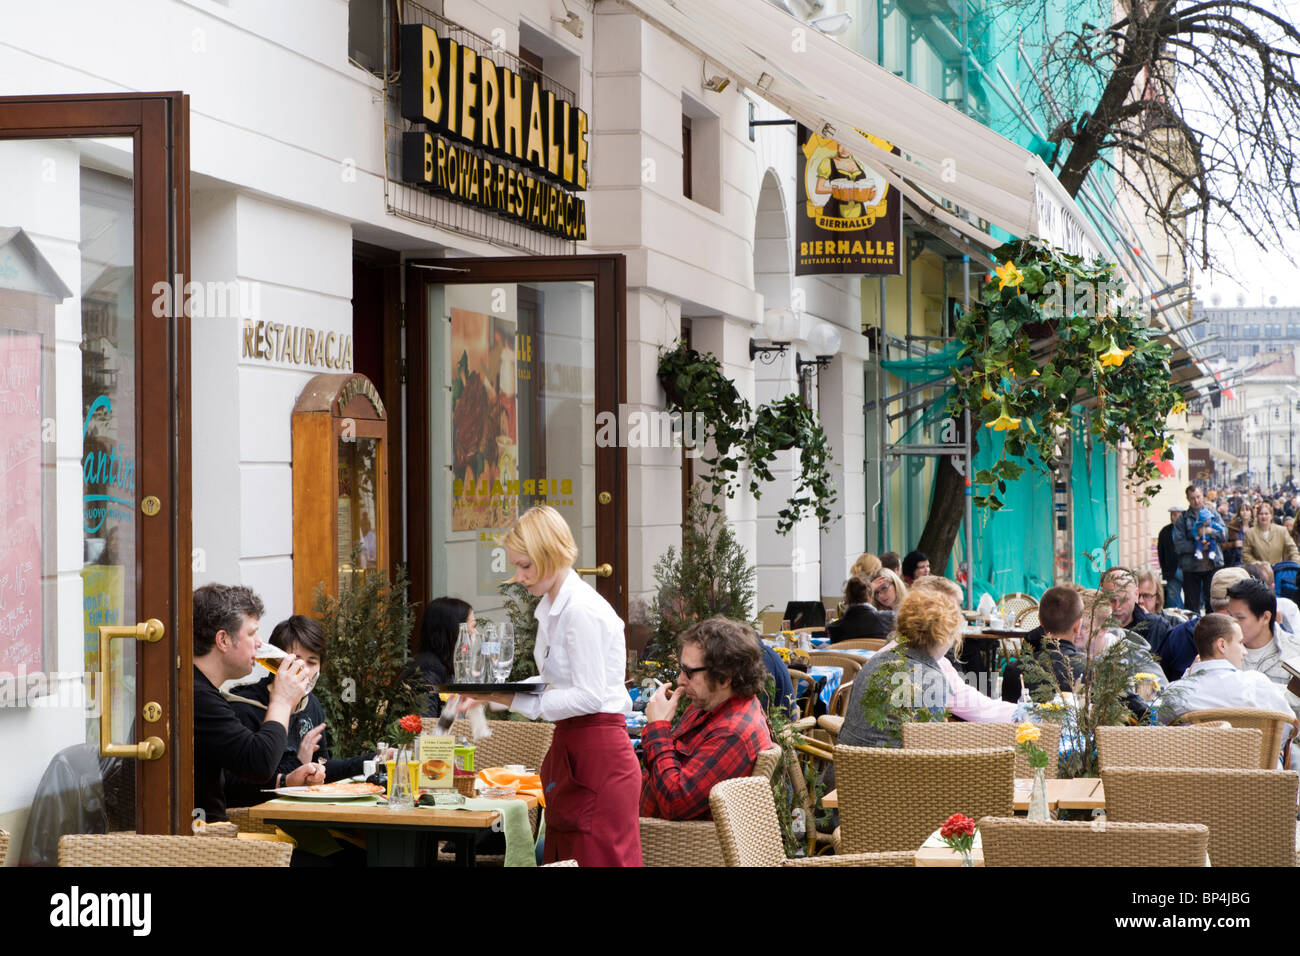 La rue Nowy Swiat, Varsovie Pologne. Il est plein de restaurants et cafés. Banque D'Images